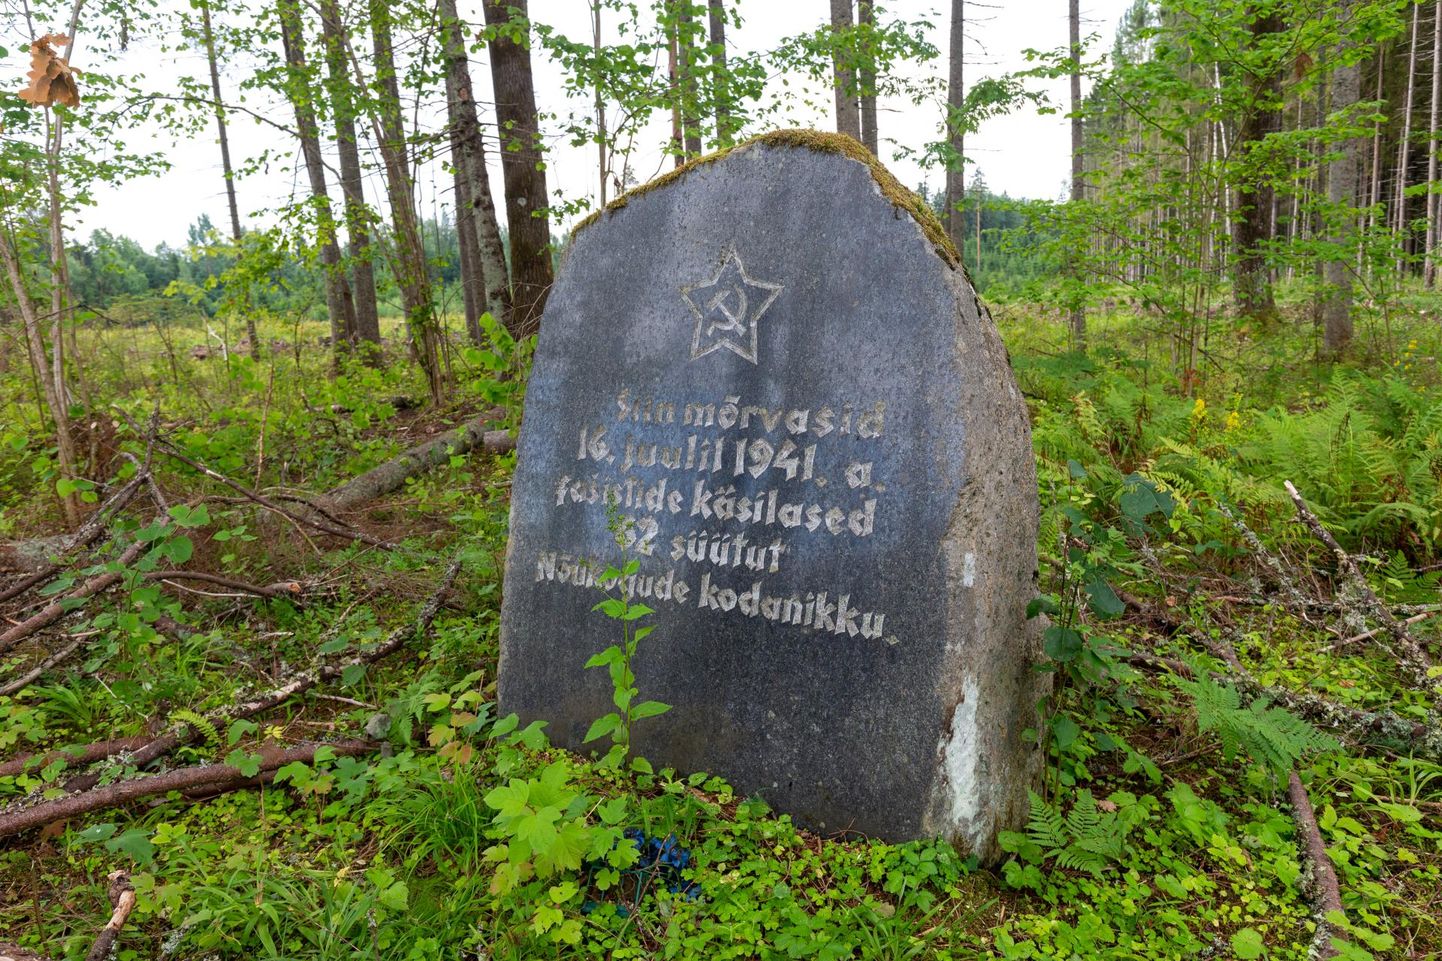 Lämba talu karjamaal toimus 16. juulil esimene Mõisaküla massihukkamine. Rahvasuus musta kivina tuntud mälestusmärgi juurde oli alles hiljuti viidud rukkililli.